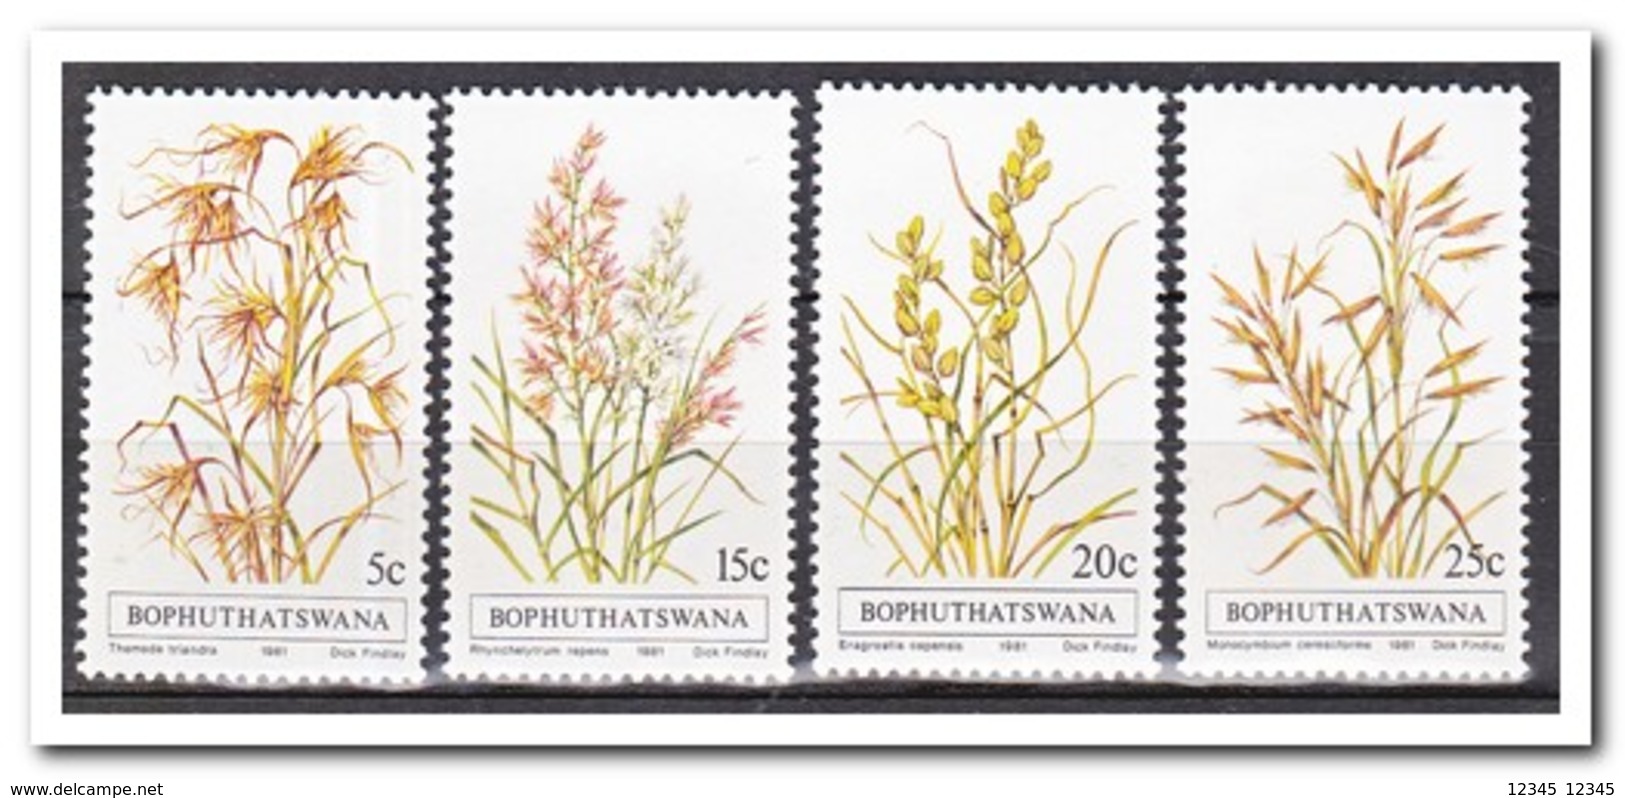 Bophutswana 1981, Postfris MNH, Grasses, Plants - Bophuthatswana